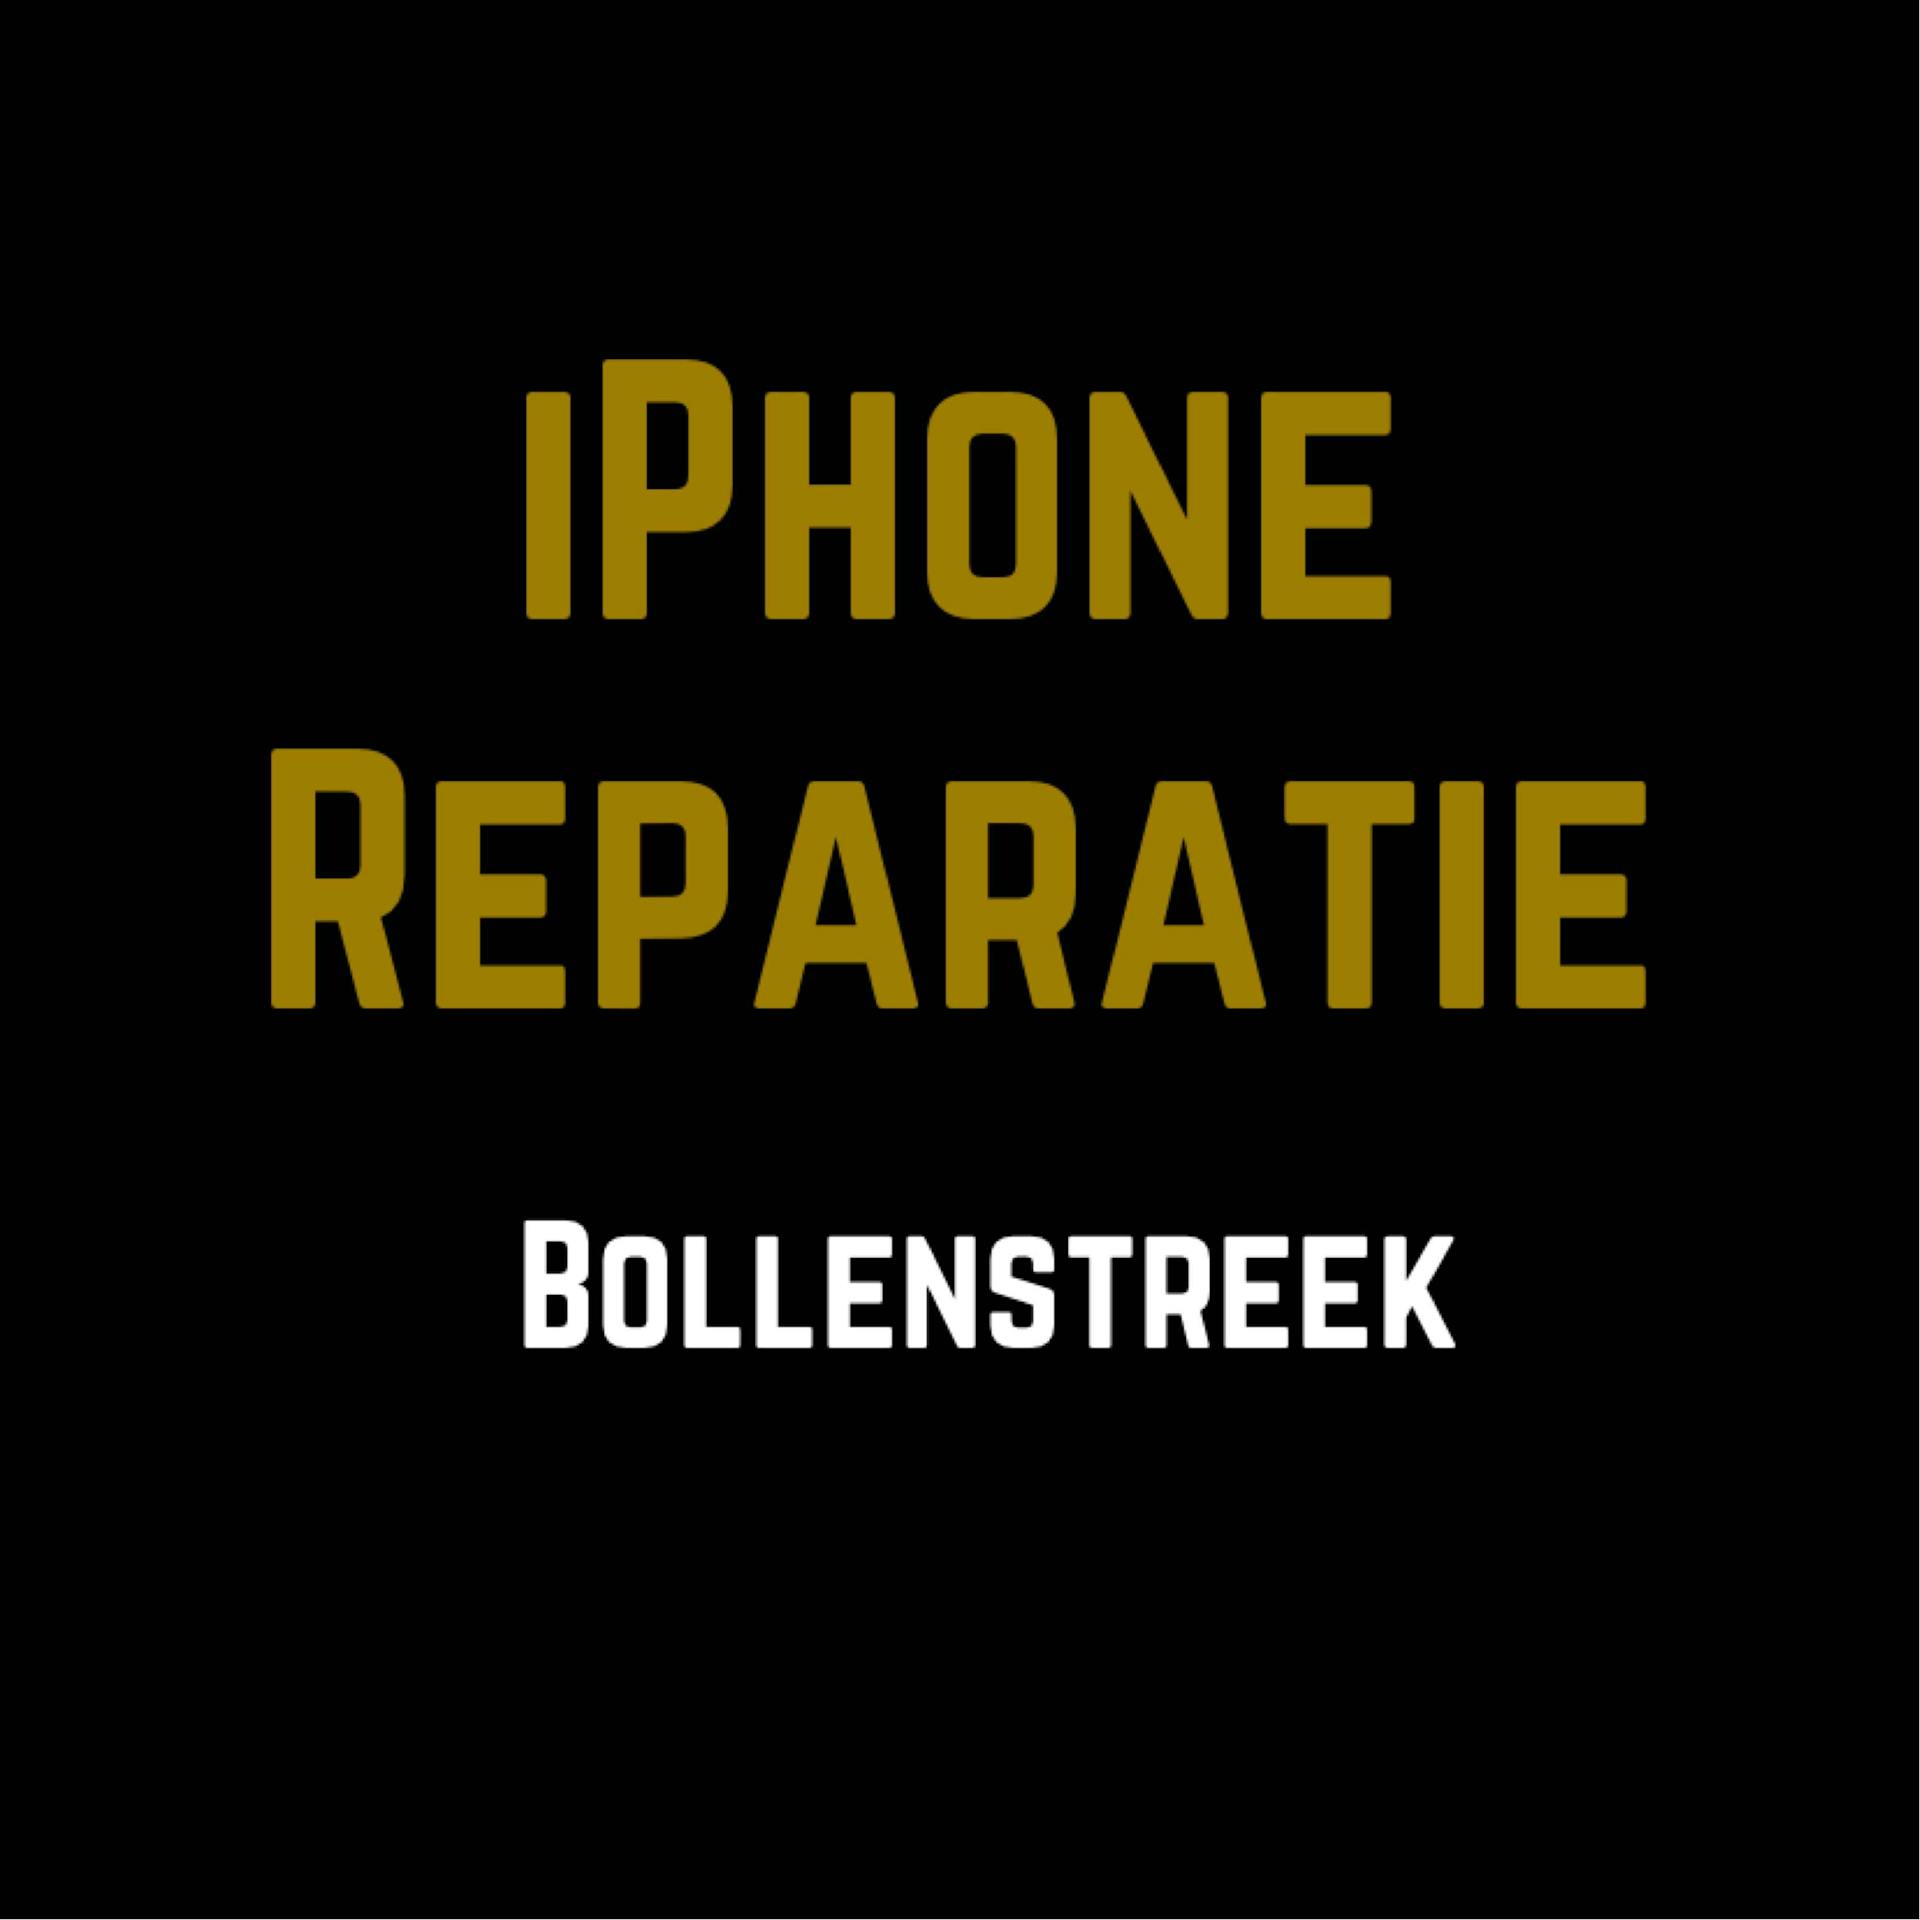 iPhone reparatie bollenstreek